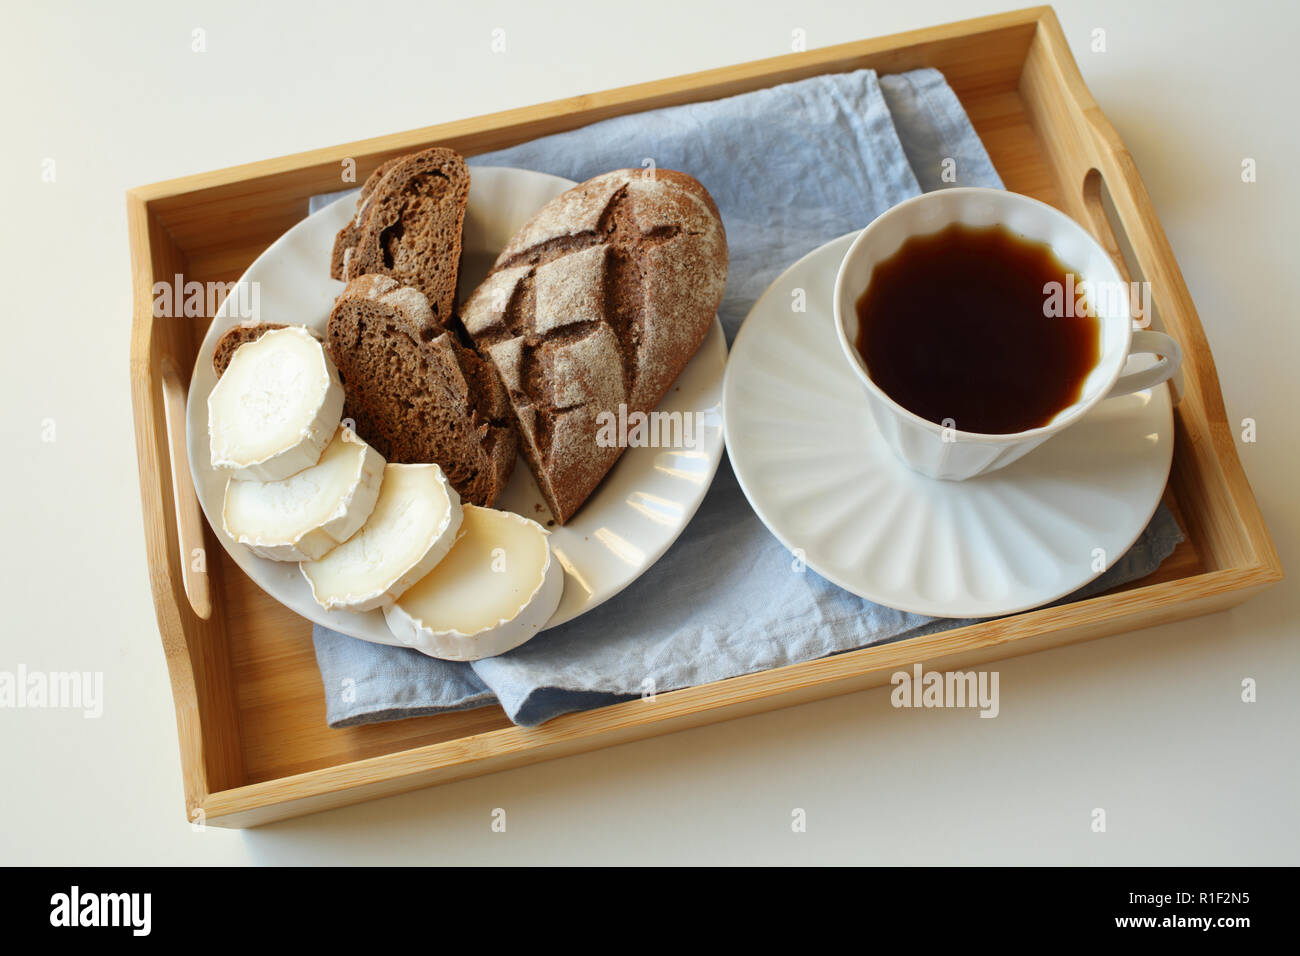 La prima colazione con formaggio di capra, pane di segale e caffè su un vassoio Foto Stock